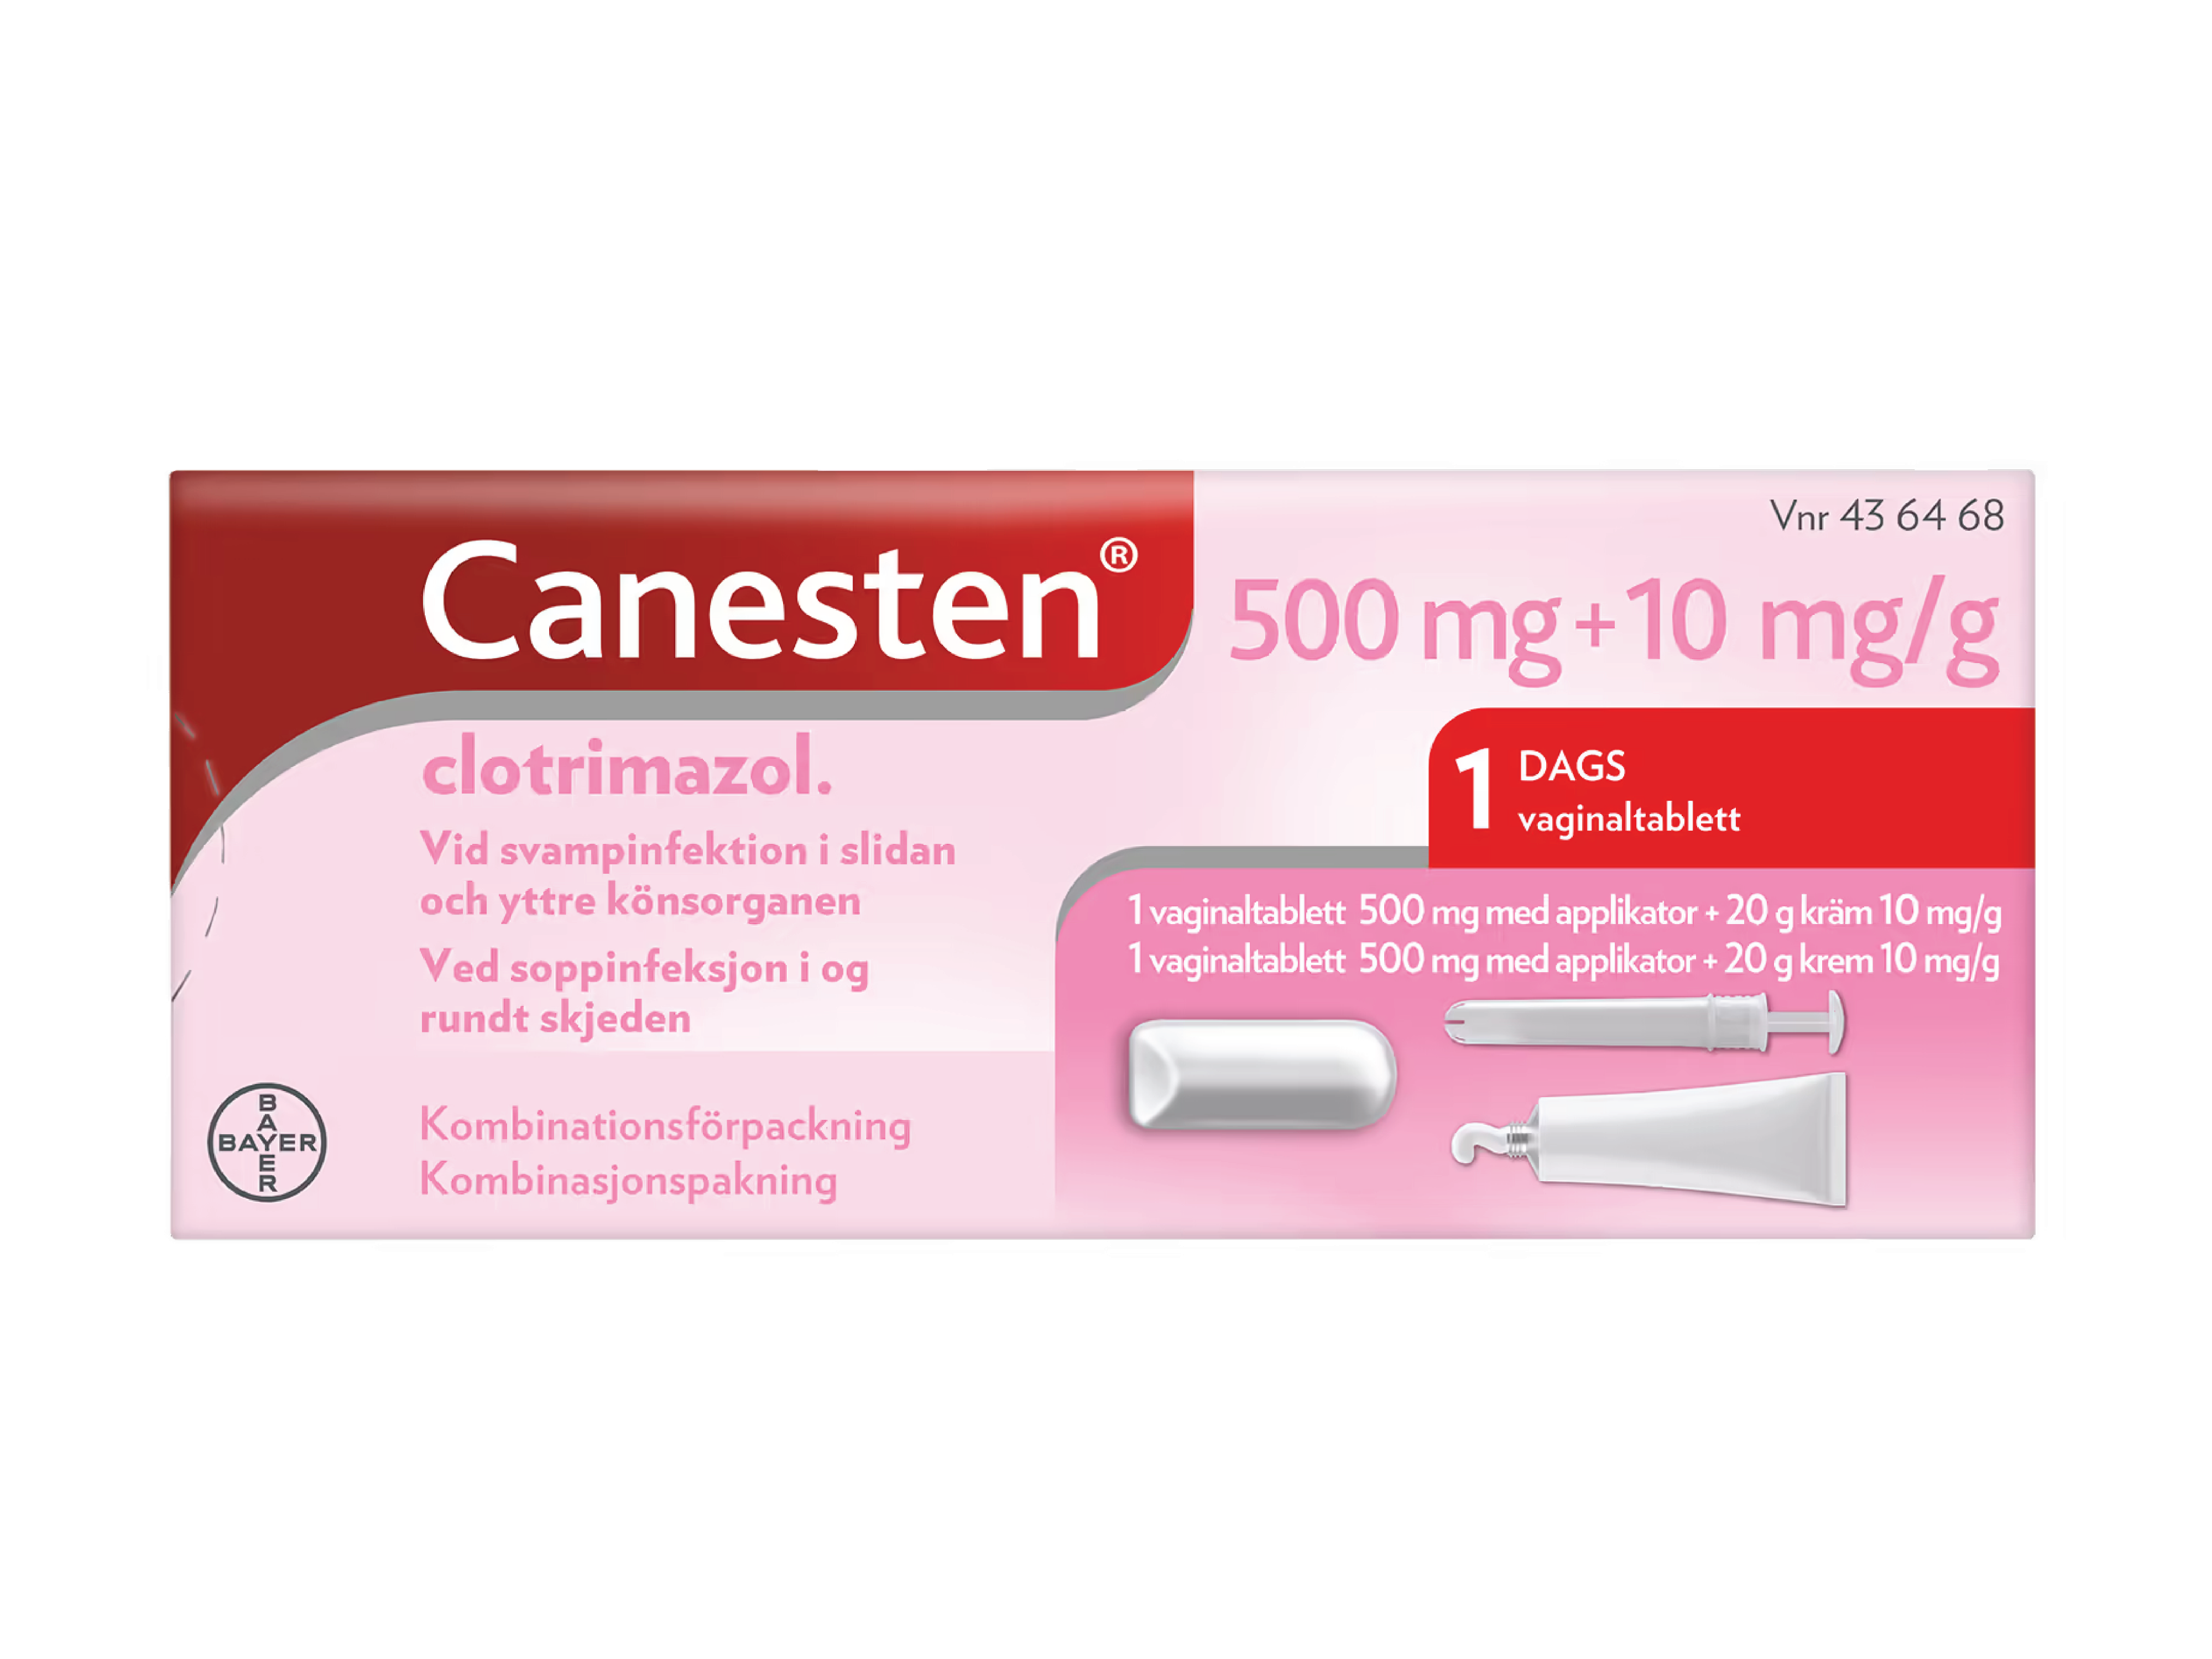 Canesten 500 mg vaginaltablett + 10 mg/g krem, 1 stk. + 20 g